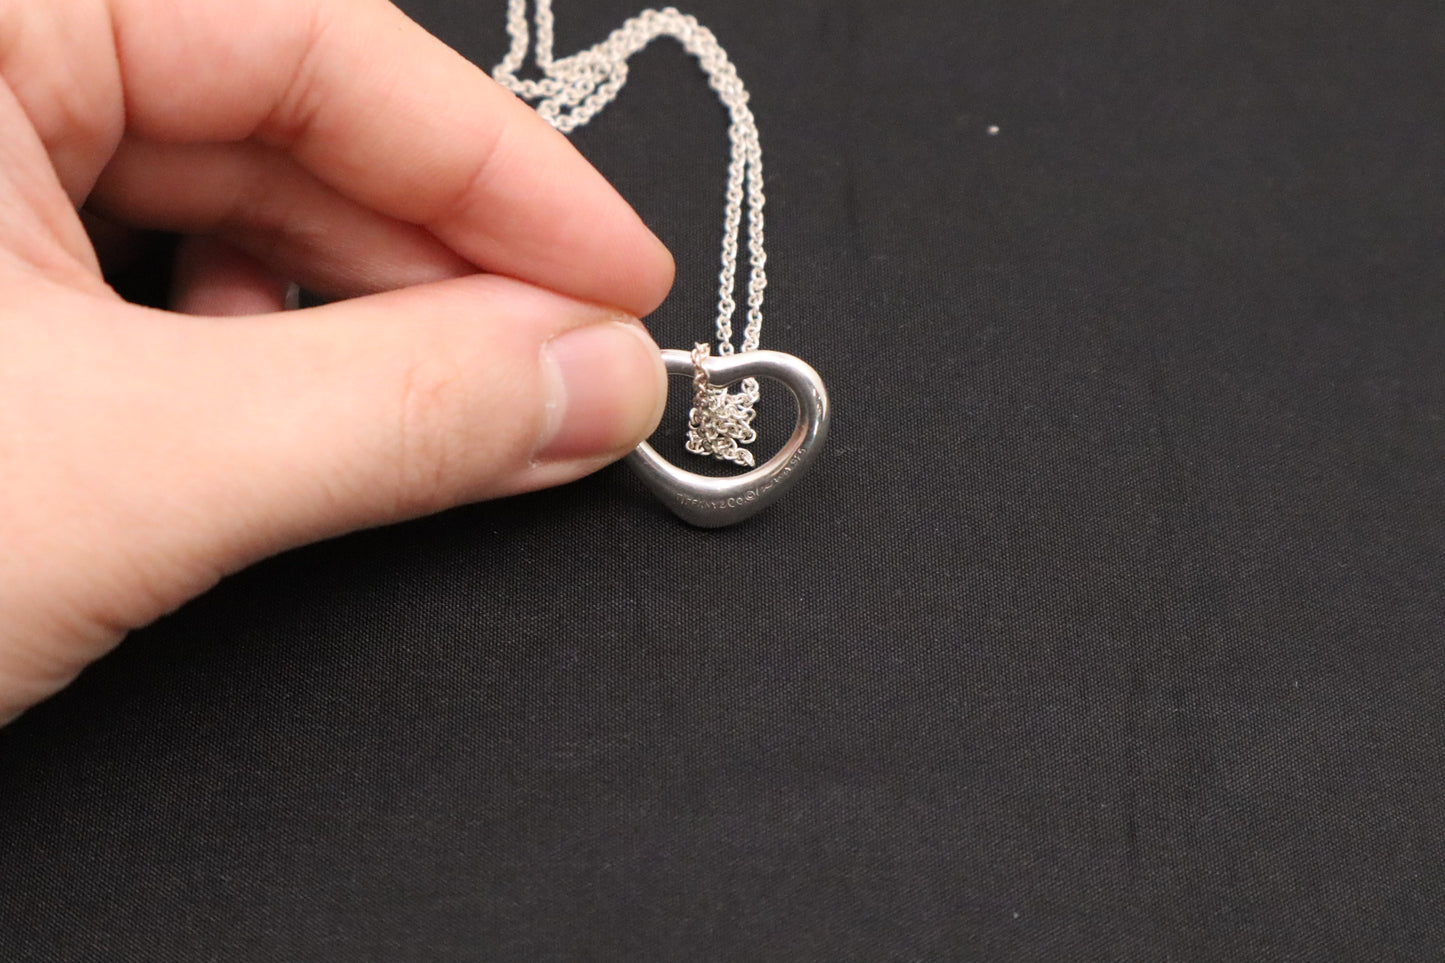 Tiffany Esla Peretti Open Heart Necklace in Sterling Silver